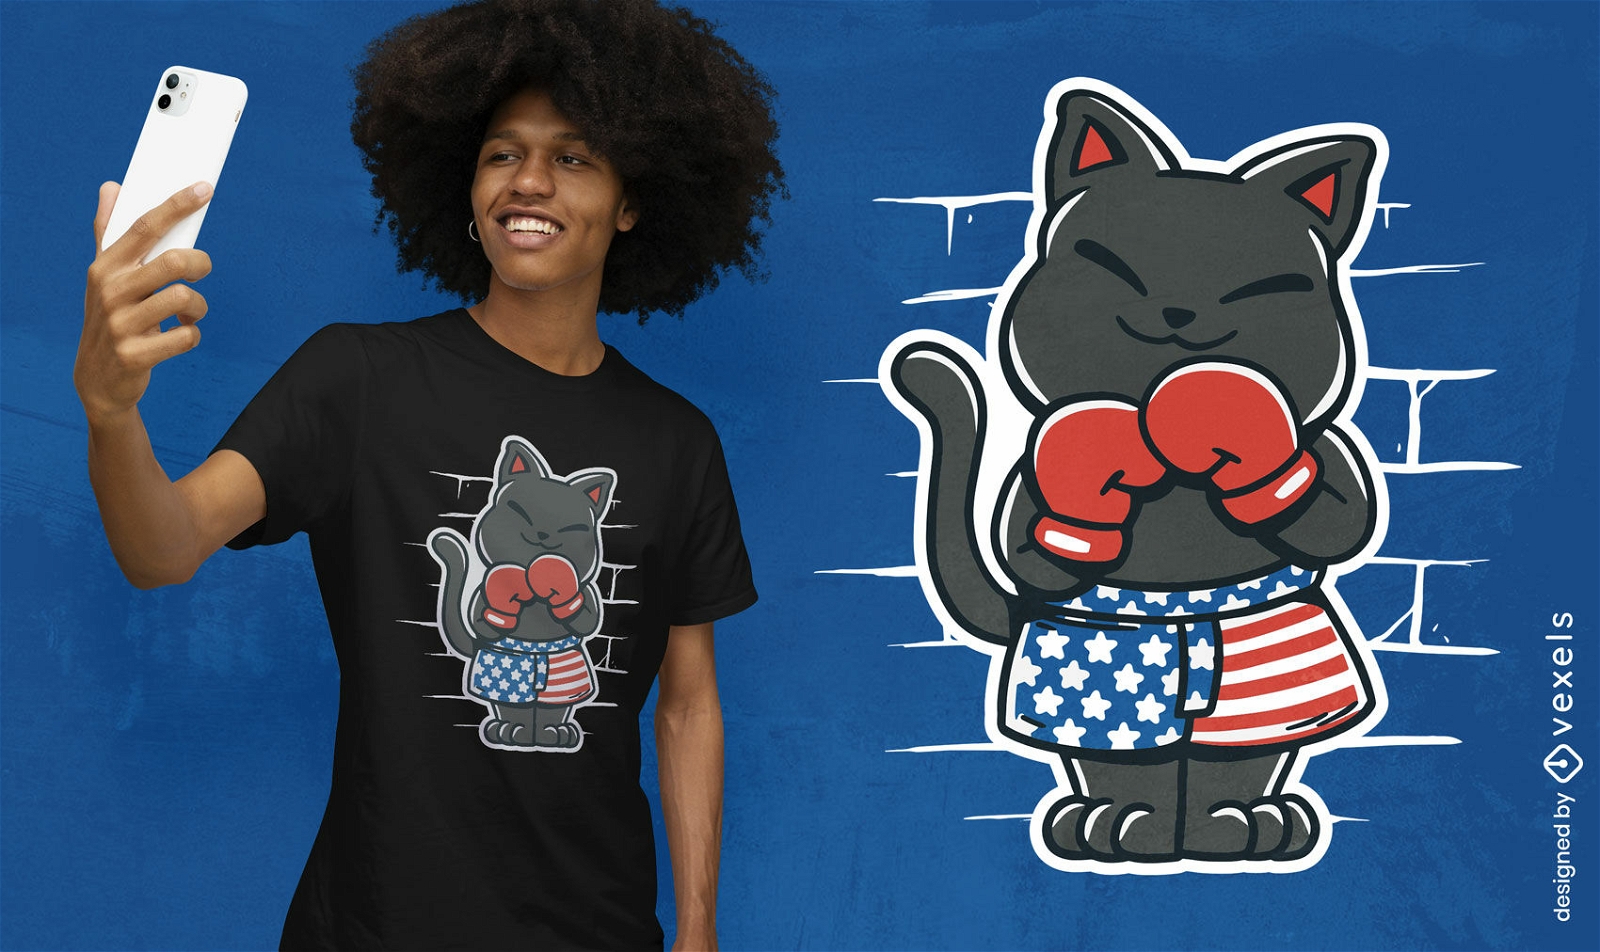 USA boxer cat t-shirt design